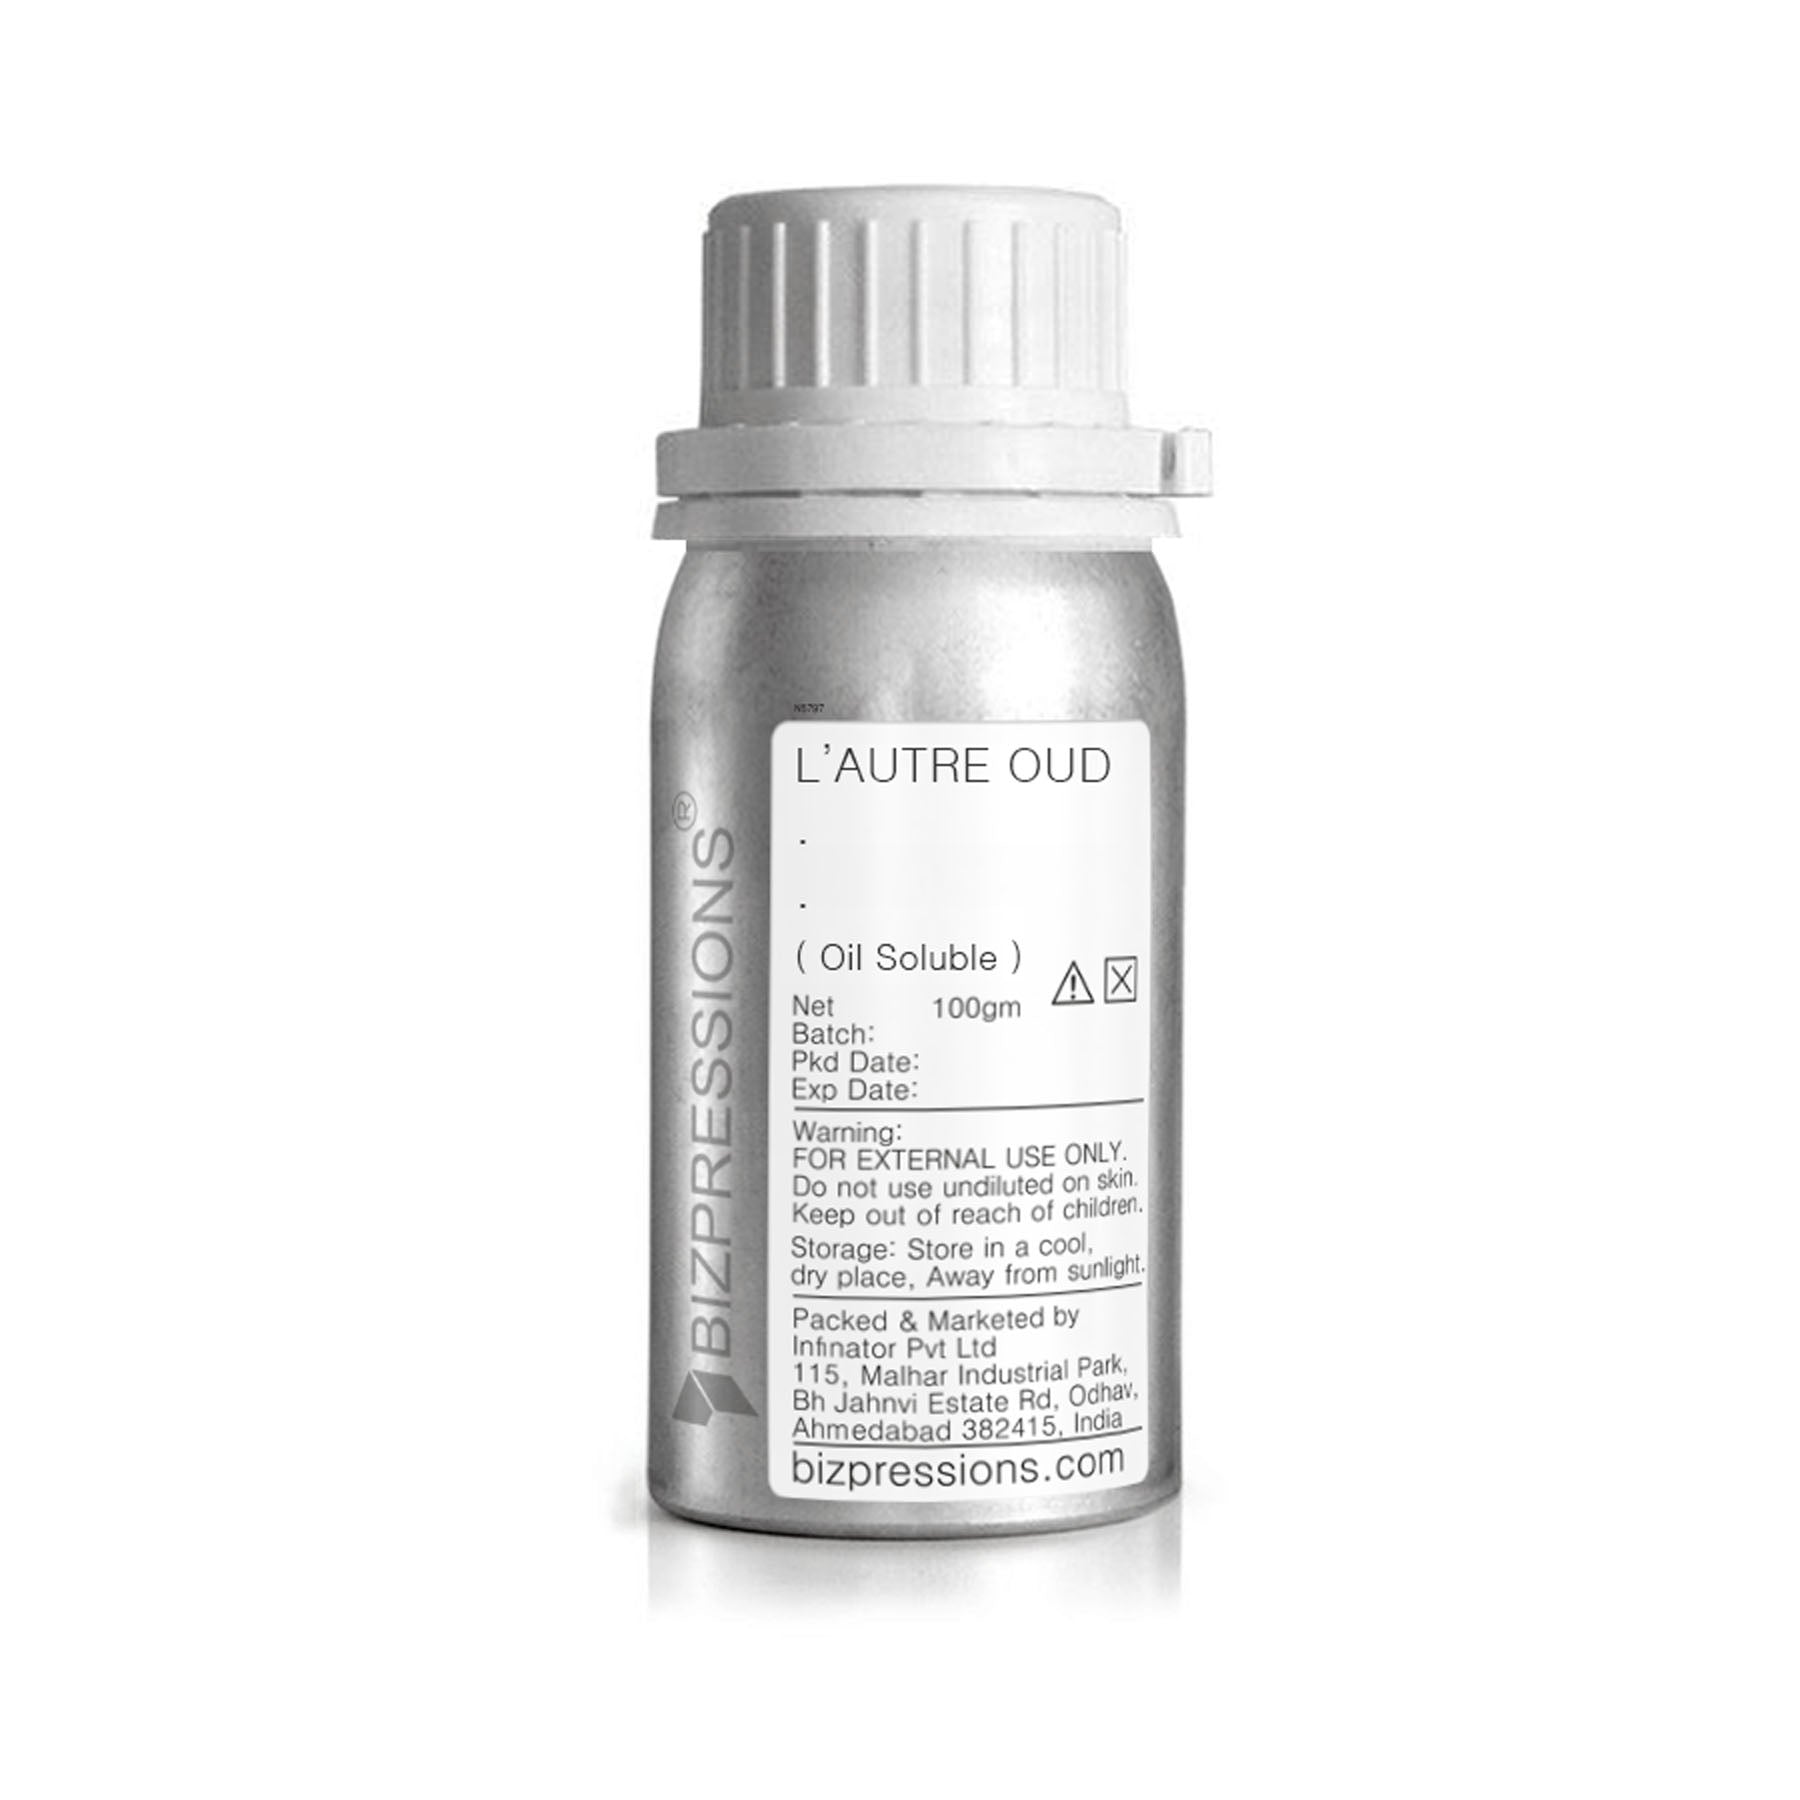 L'AUTRE OUD - Fragrance ( Oil Soluble ) - 100 gm